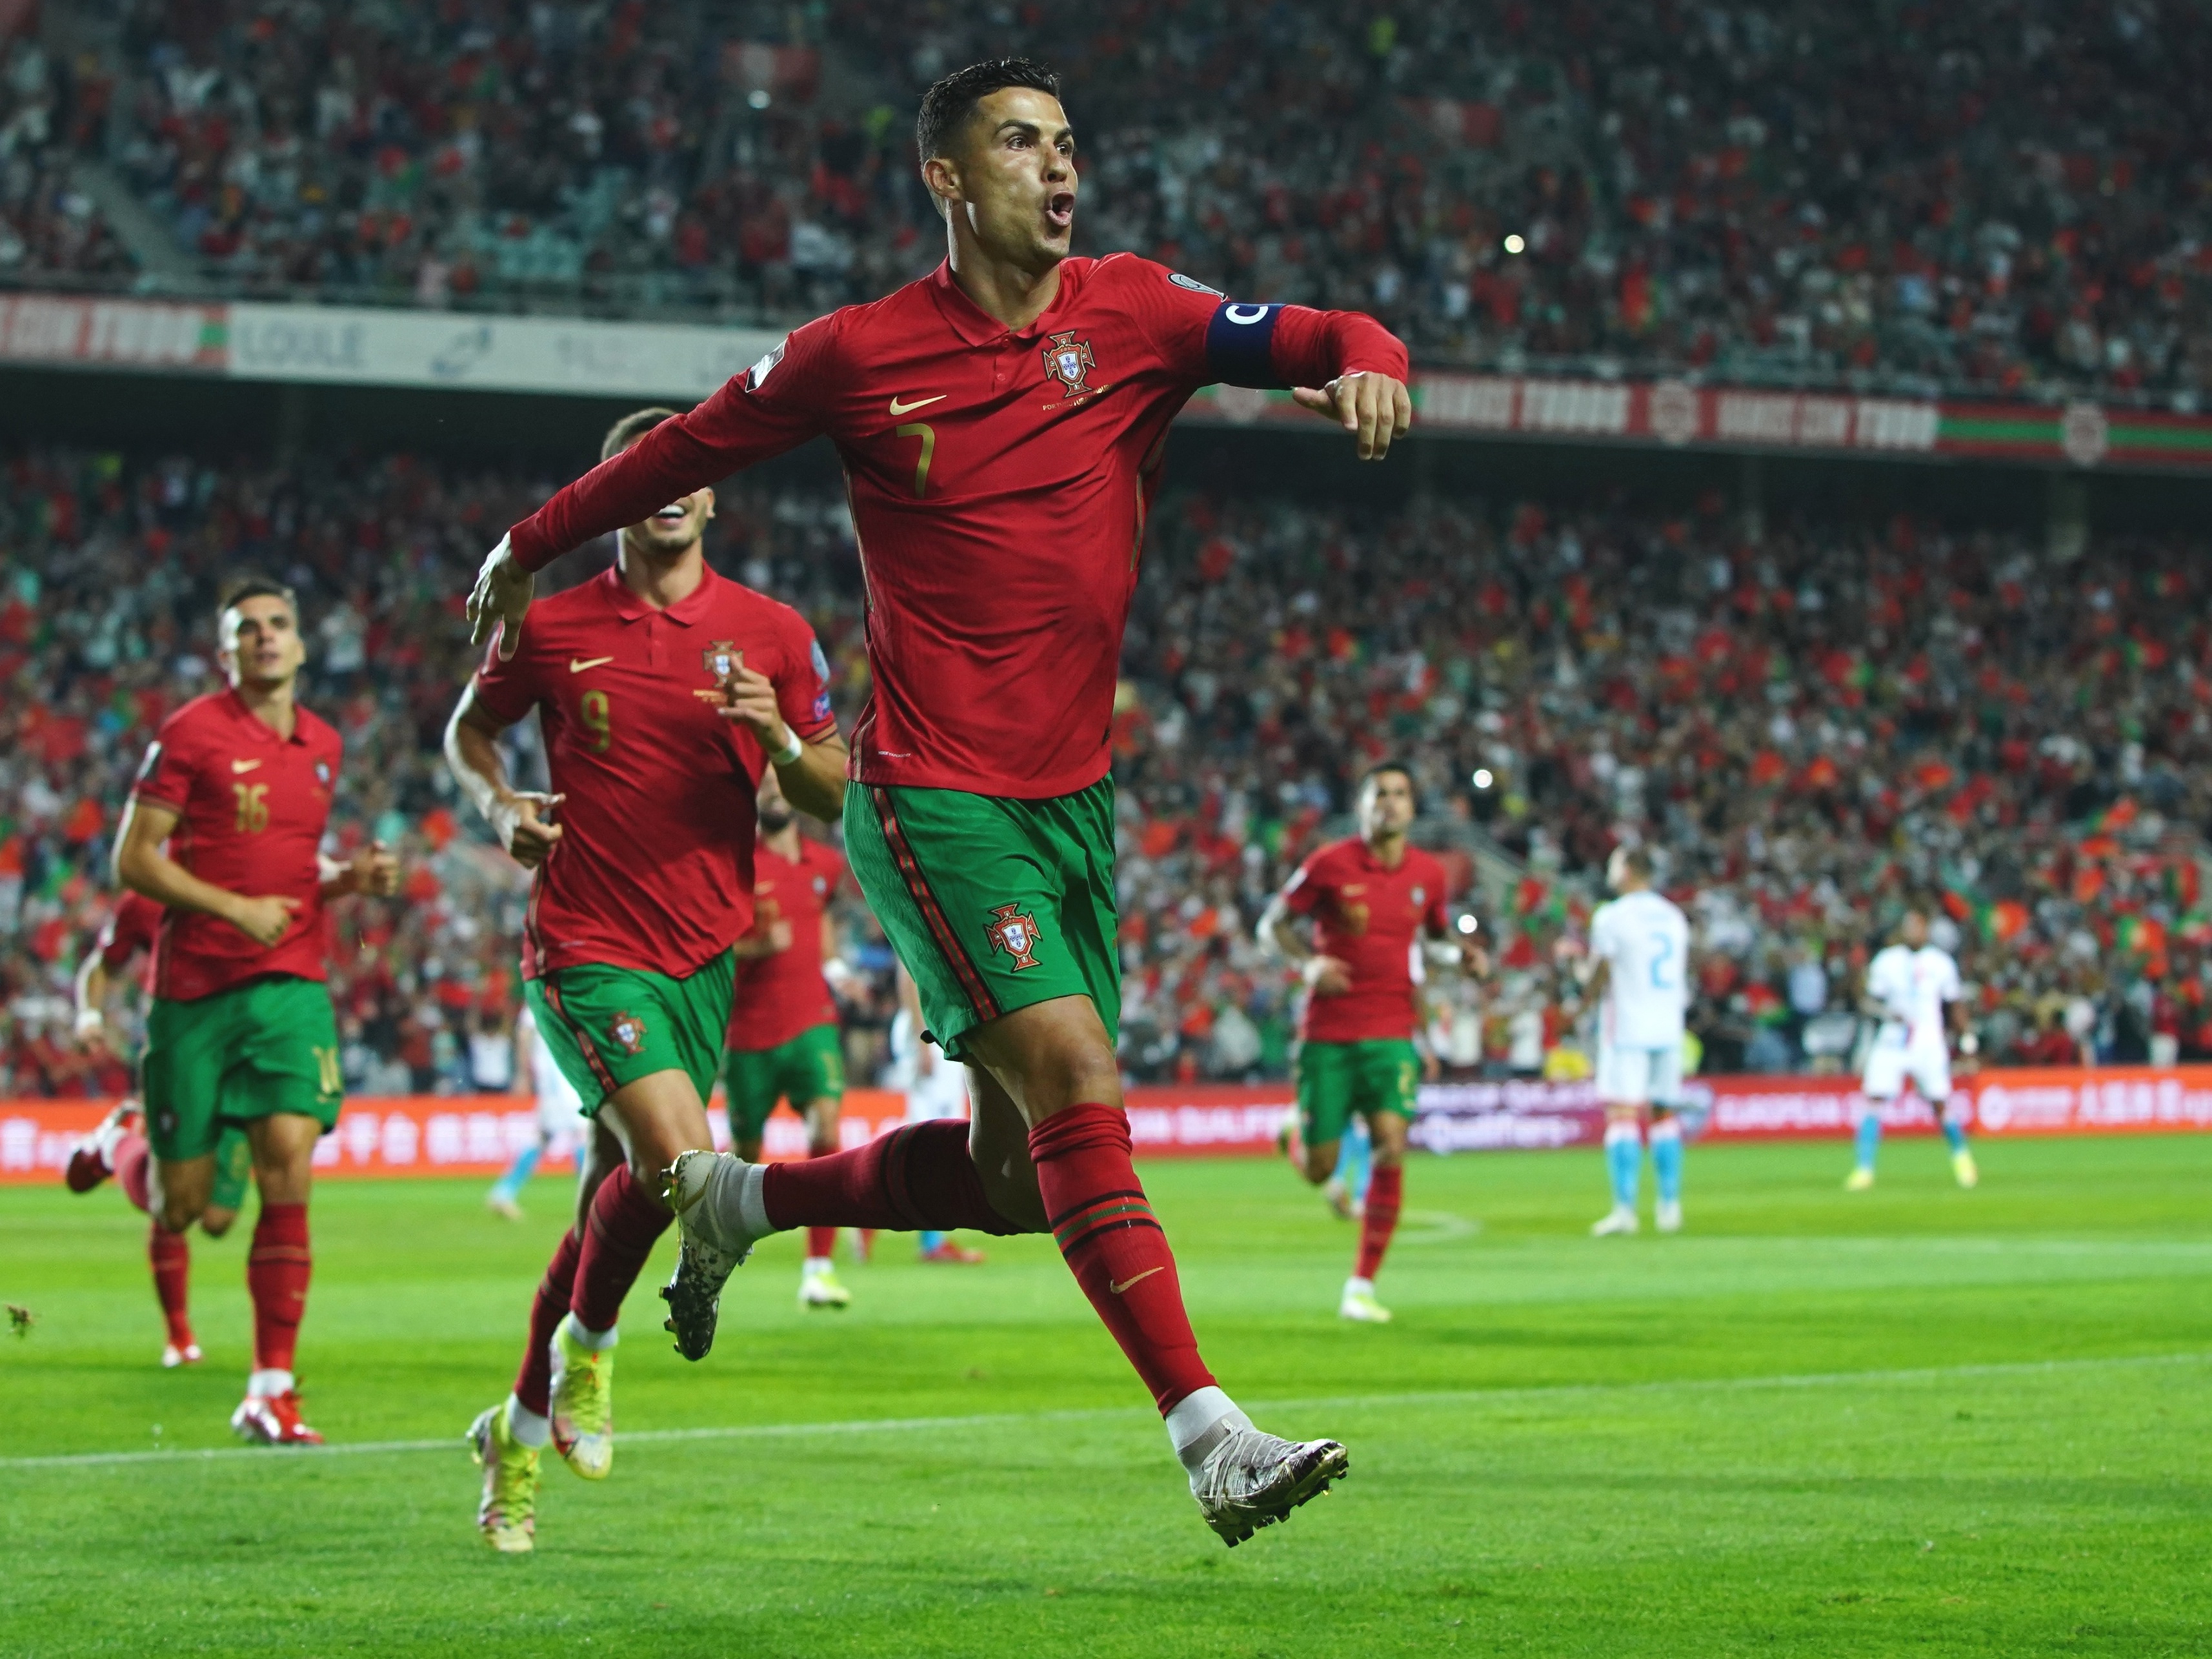 Portugal se despede da Copa com vitória e gol de Cristiano Ronaldo -  Futebol - R7 Copa do Mundo 2014